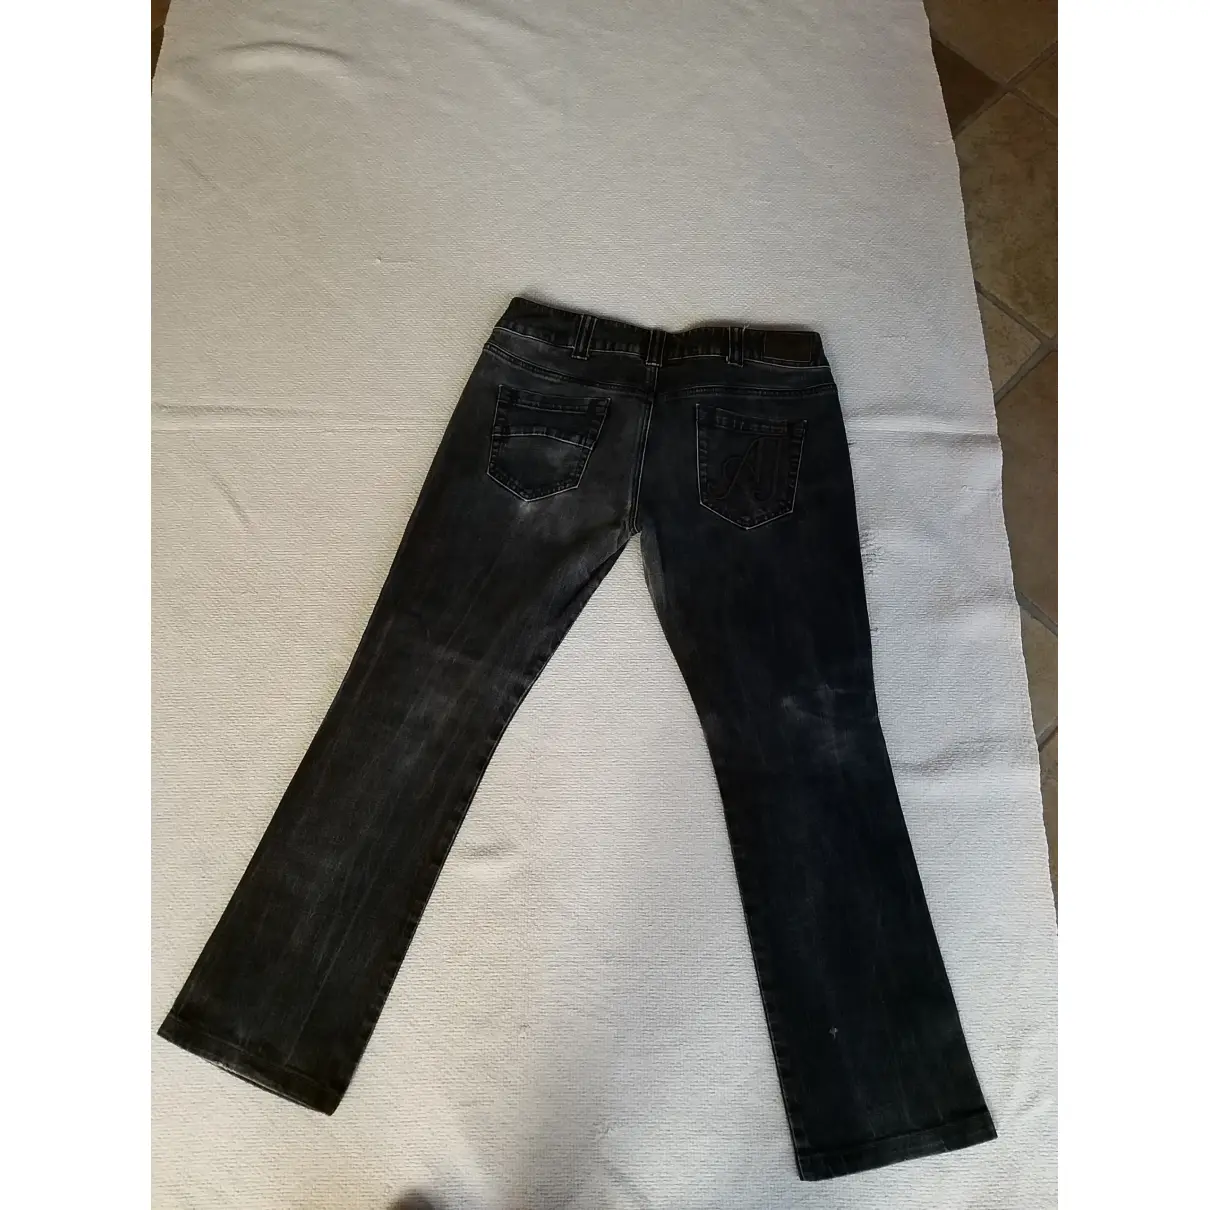 Buy Armani Jeans Large pants online